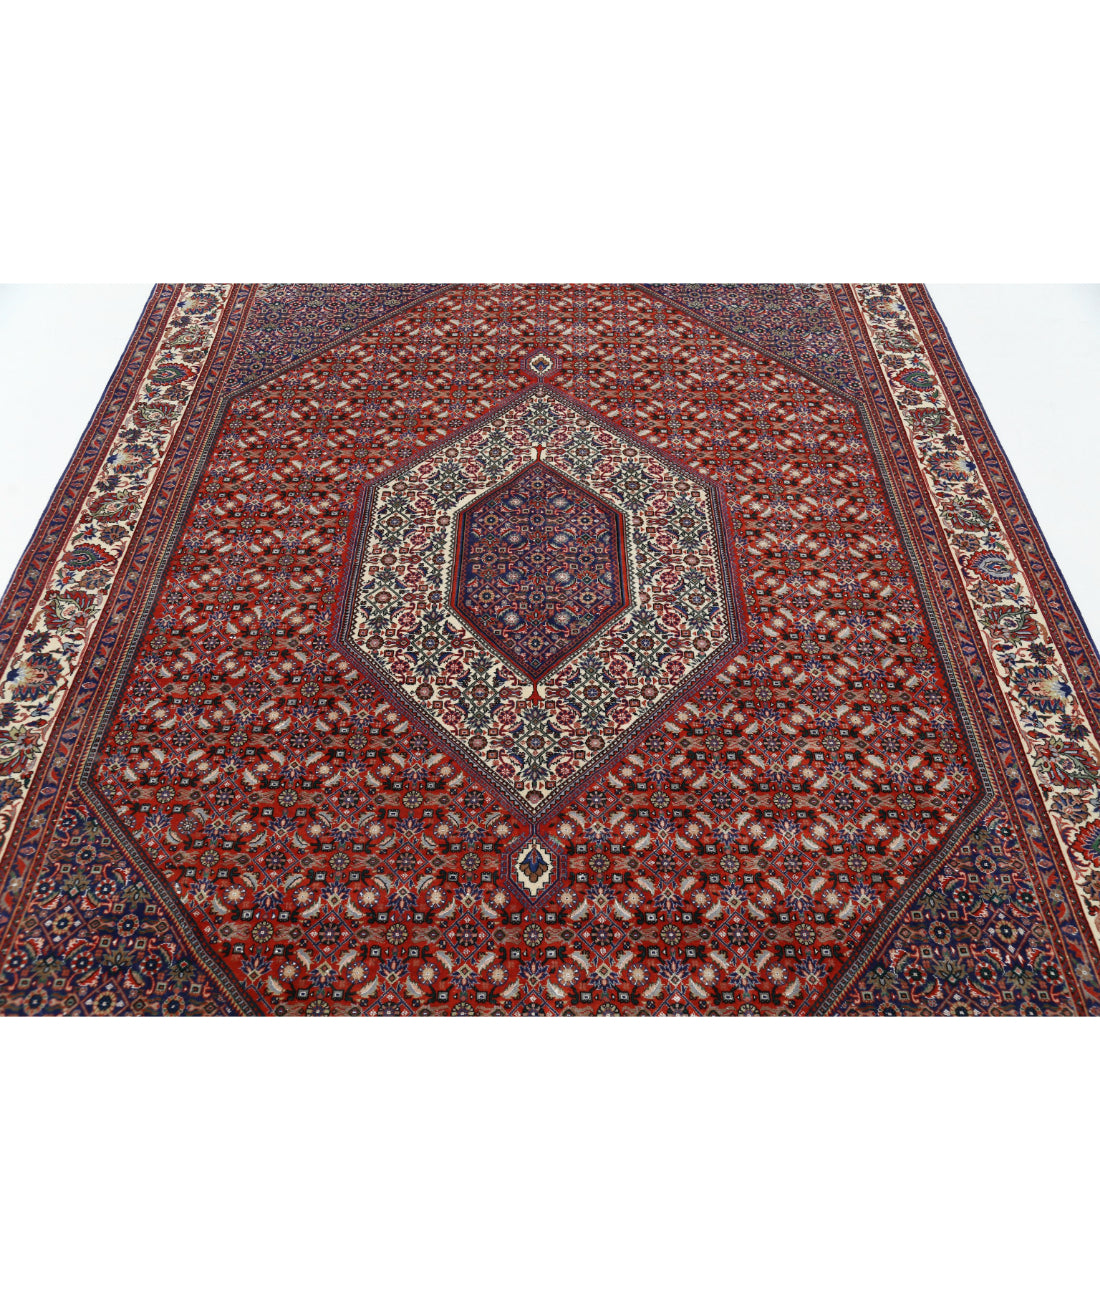 Hand Knotted Persian Bijar Wool & Silk Rug - 6'7'' x 9'9'' 6'7'' x 9'9'' (198 X 293) / Red / Ivory